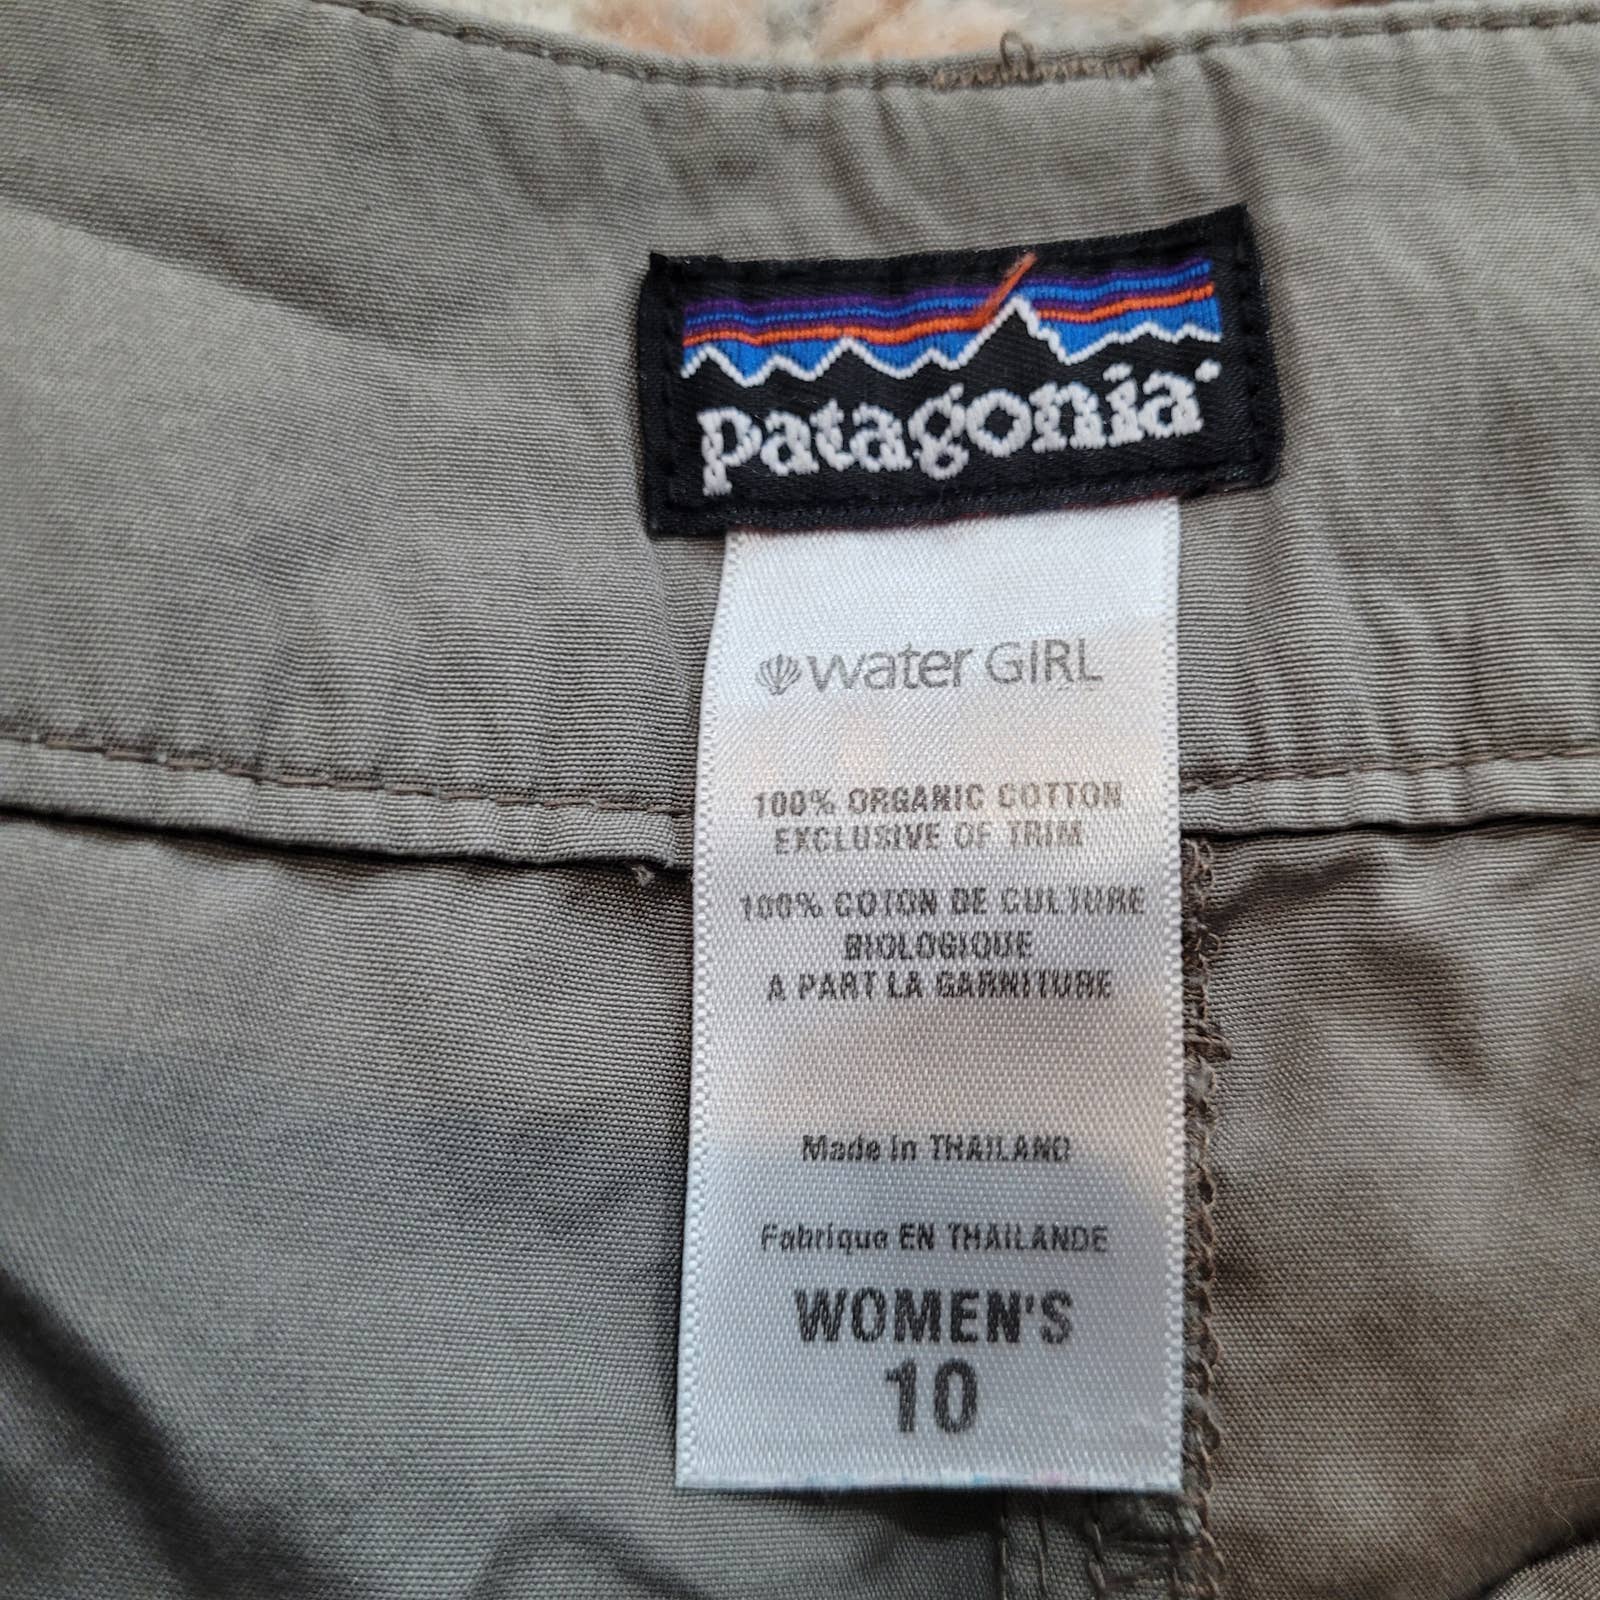 Patagonia Water Girl Long Women's Shorts - Size 10Markita's ClosetPatagonia